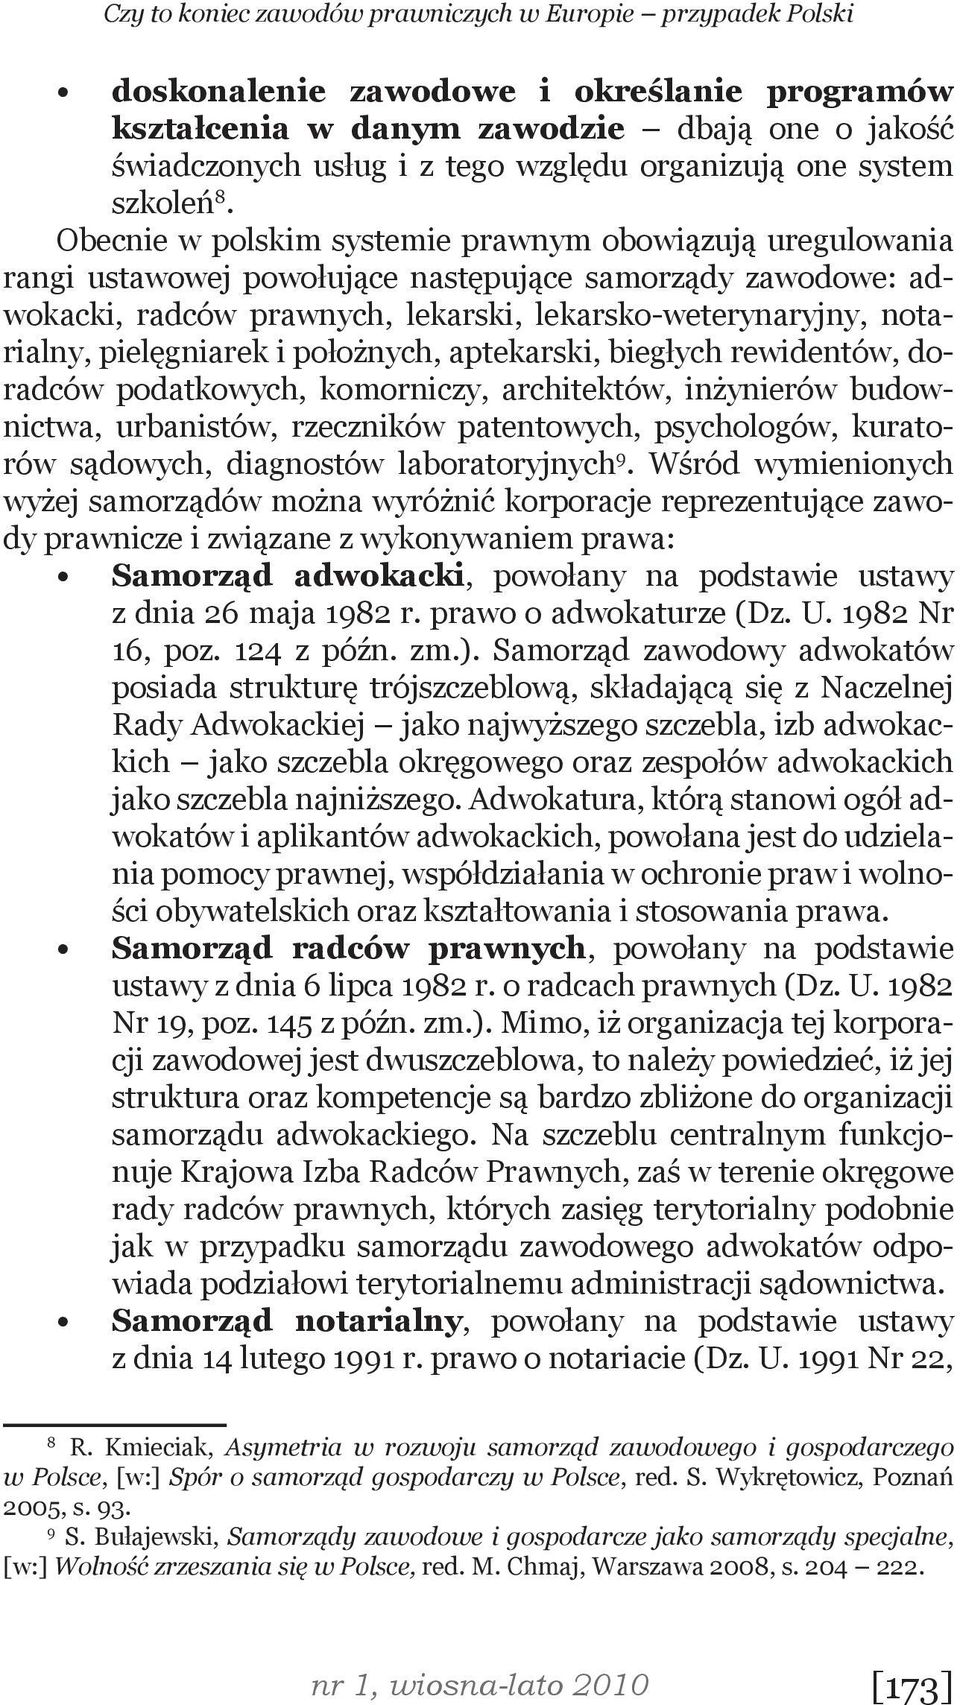 Obecnie w polskim systemie prawnym obowiązują uregulowania rangi ustawowej powołujące następujące samorządy zawodowe: adwokacki, radców prawnych, lekarski, lekarsko-weterynaryjny, notarialny,